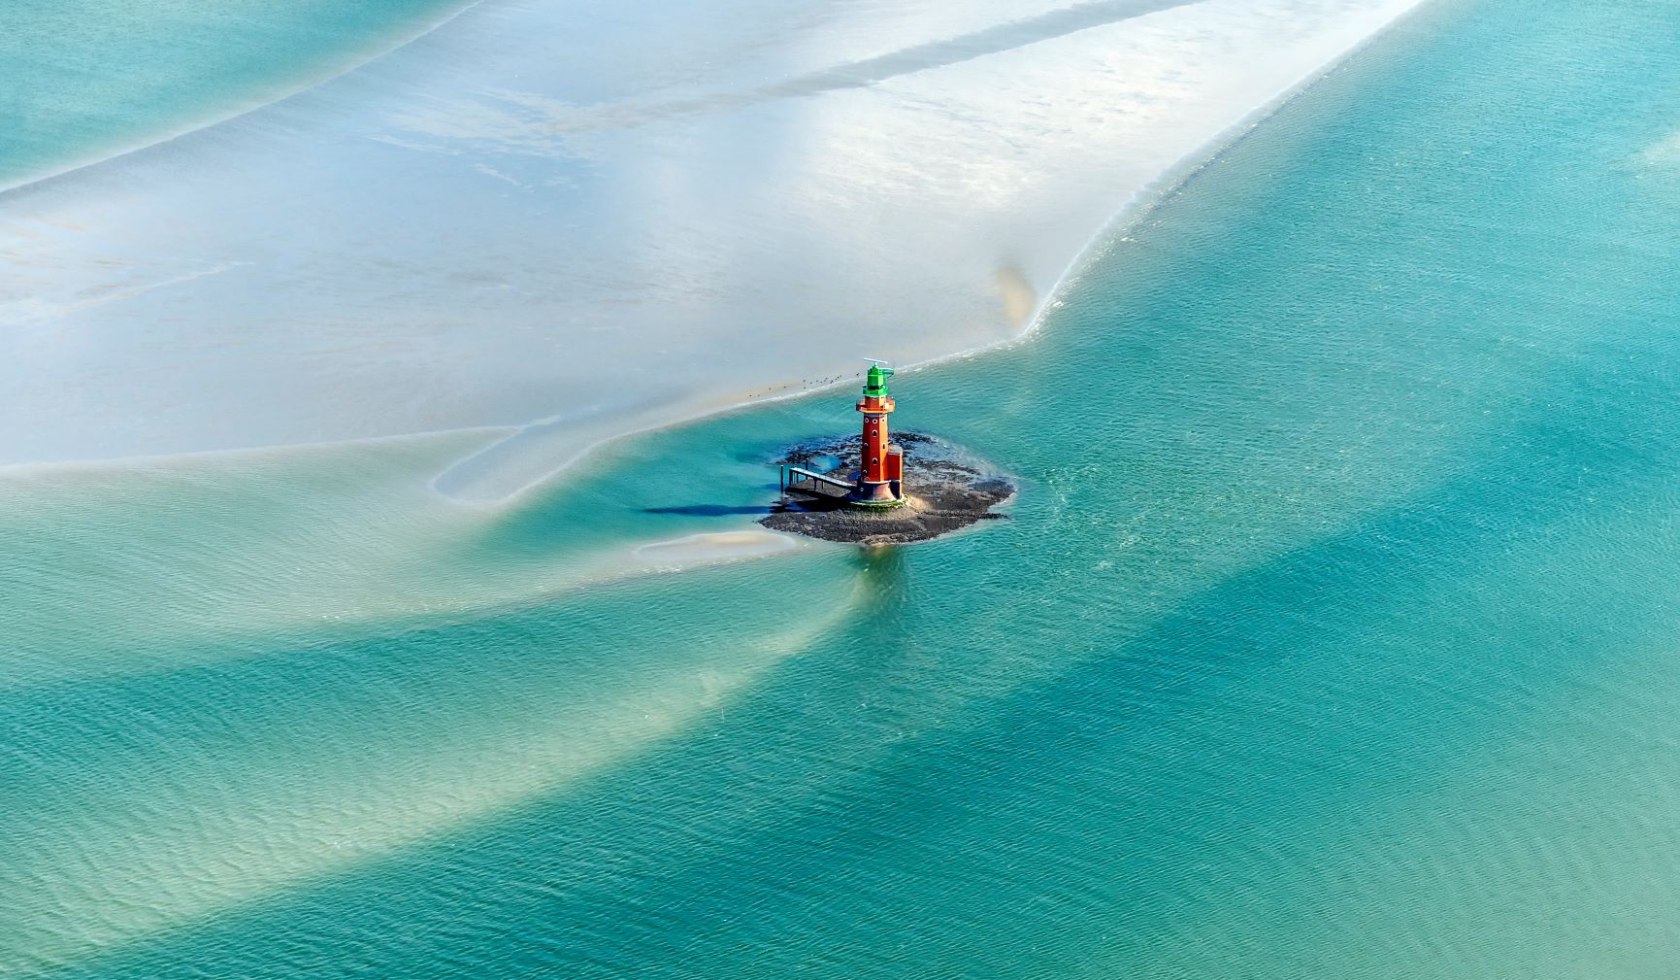 Lighthouse Hohe Weg Aerial View, © Martin Elsen